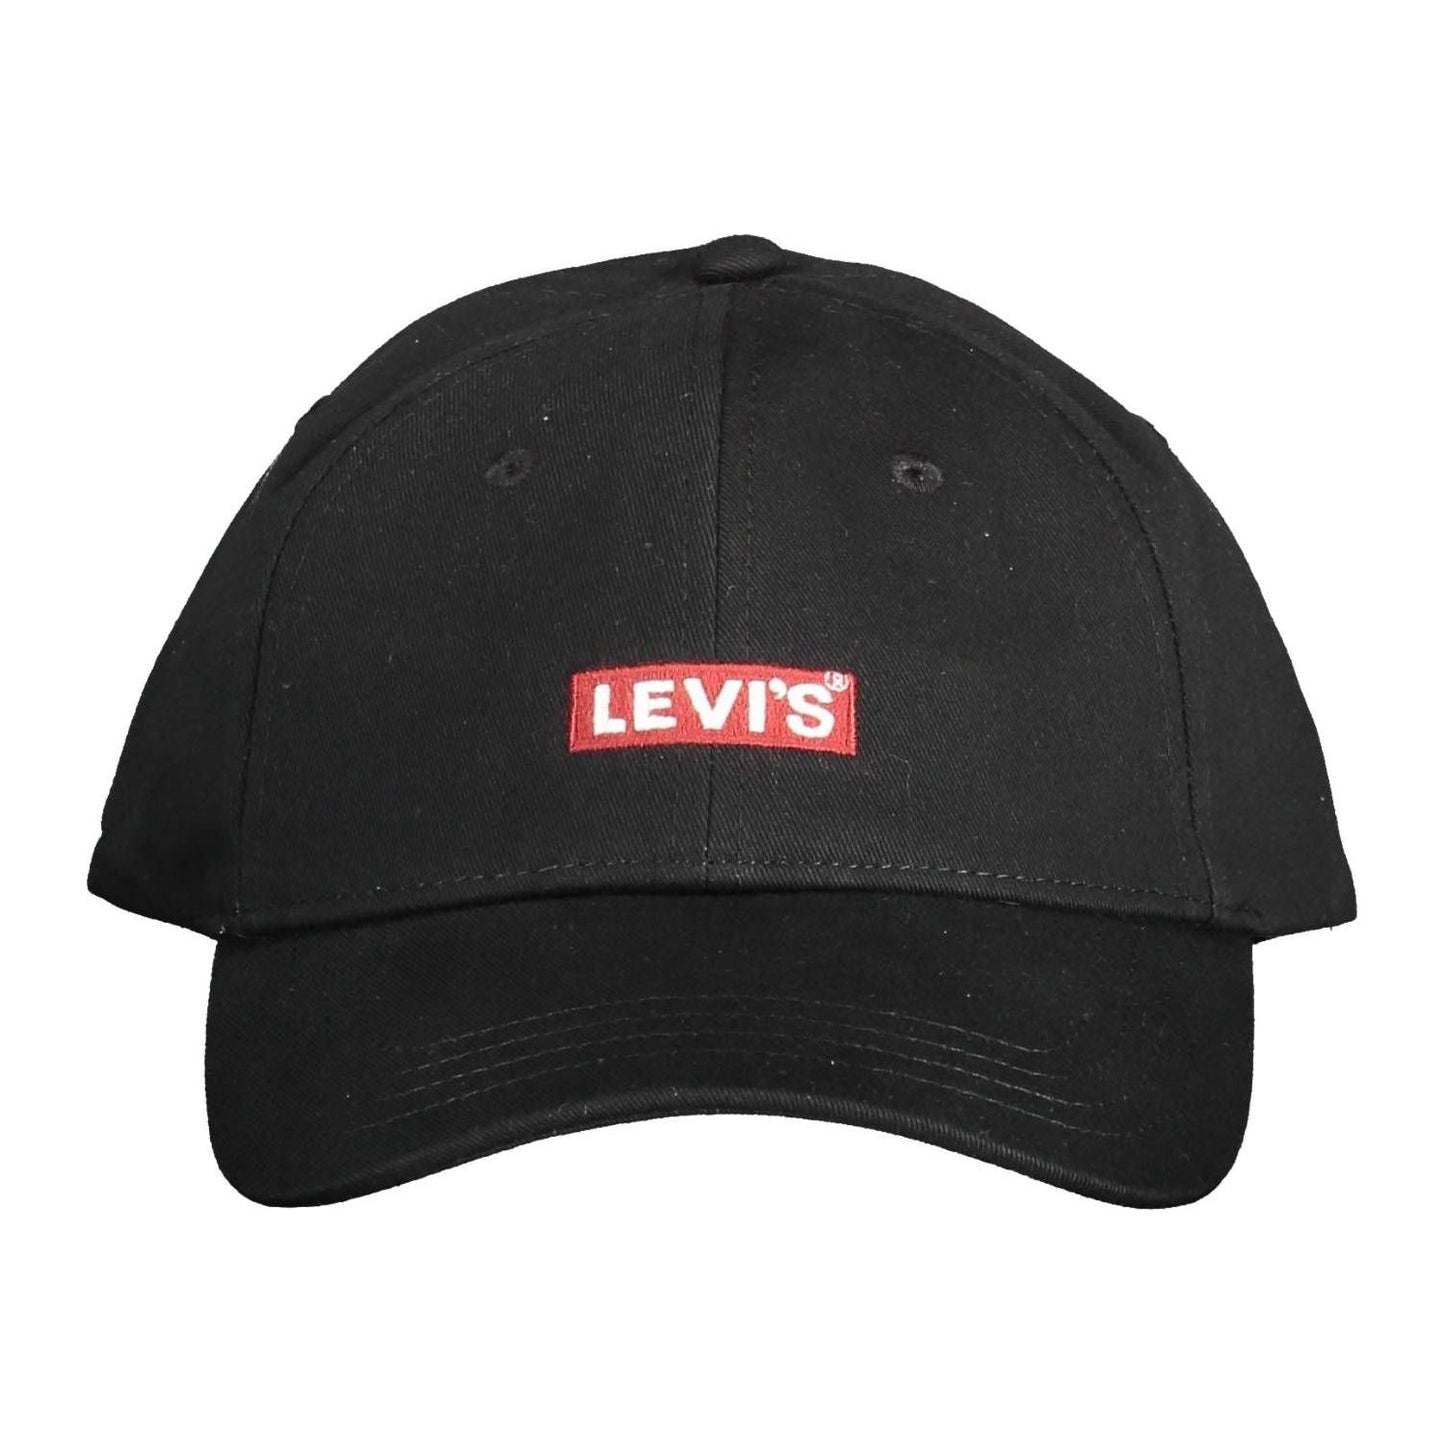 Levi's Chic Embroidered Visor Cap in Elegant Black chic-embroidered-visor-cap-in-elegant-black